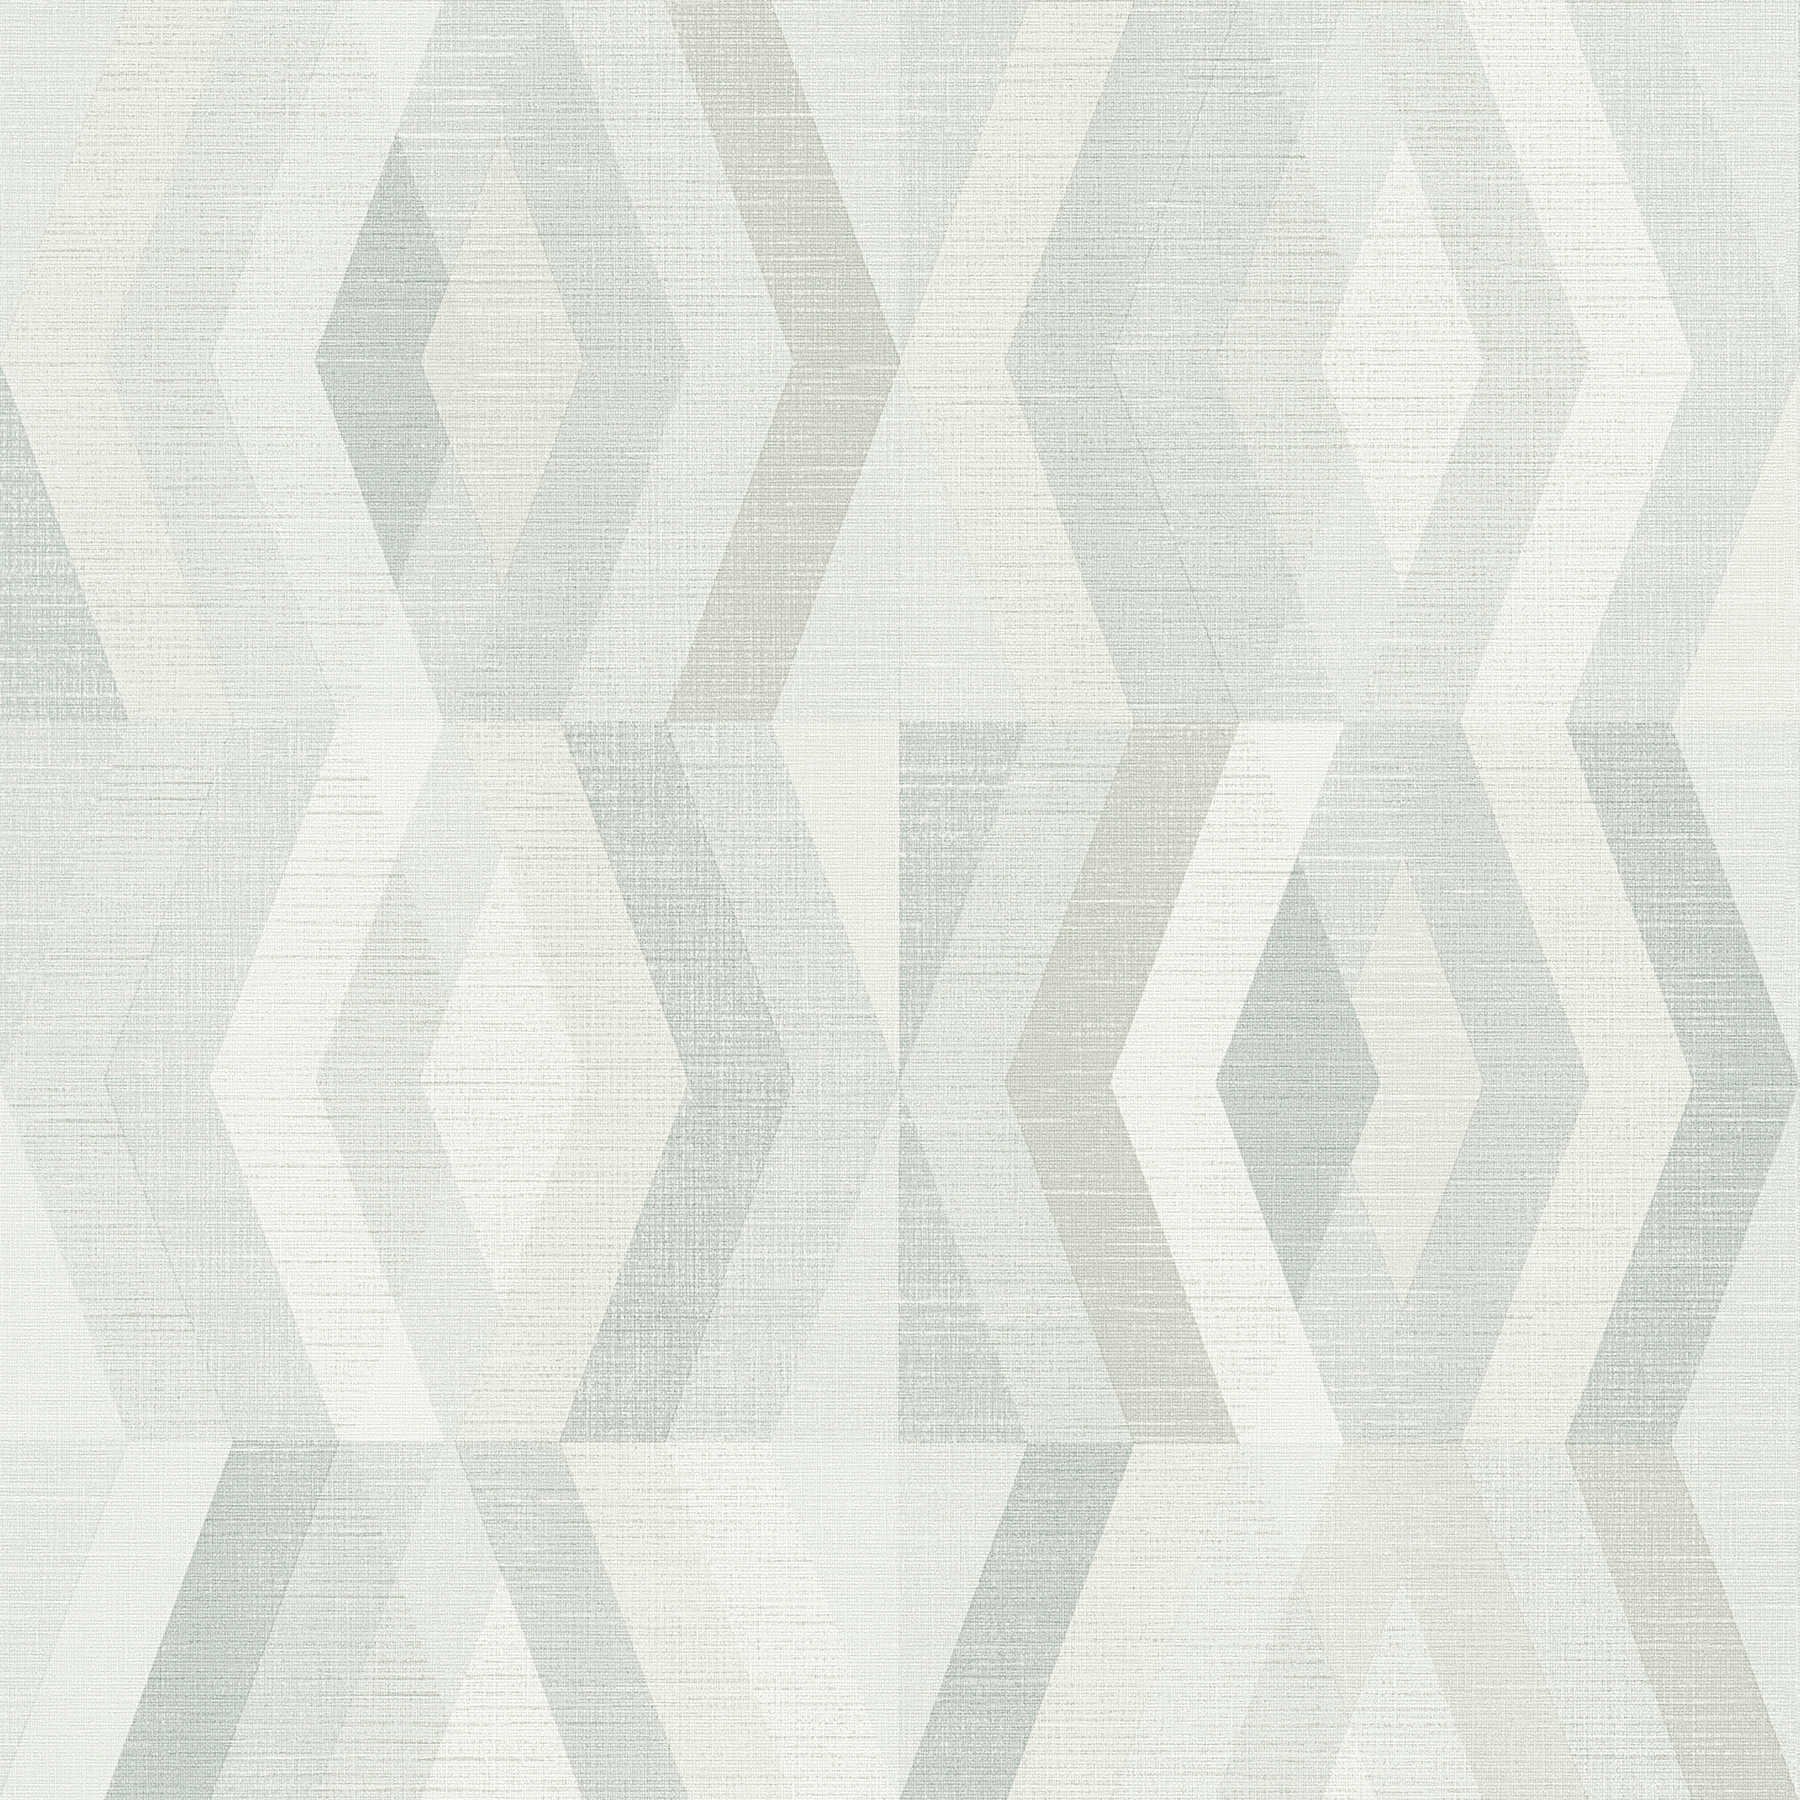 Tapete Scandinavian Stil mit geometrischem Muster - Grau, Beige
